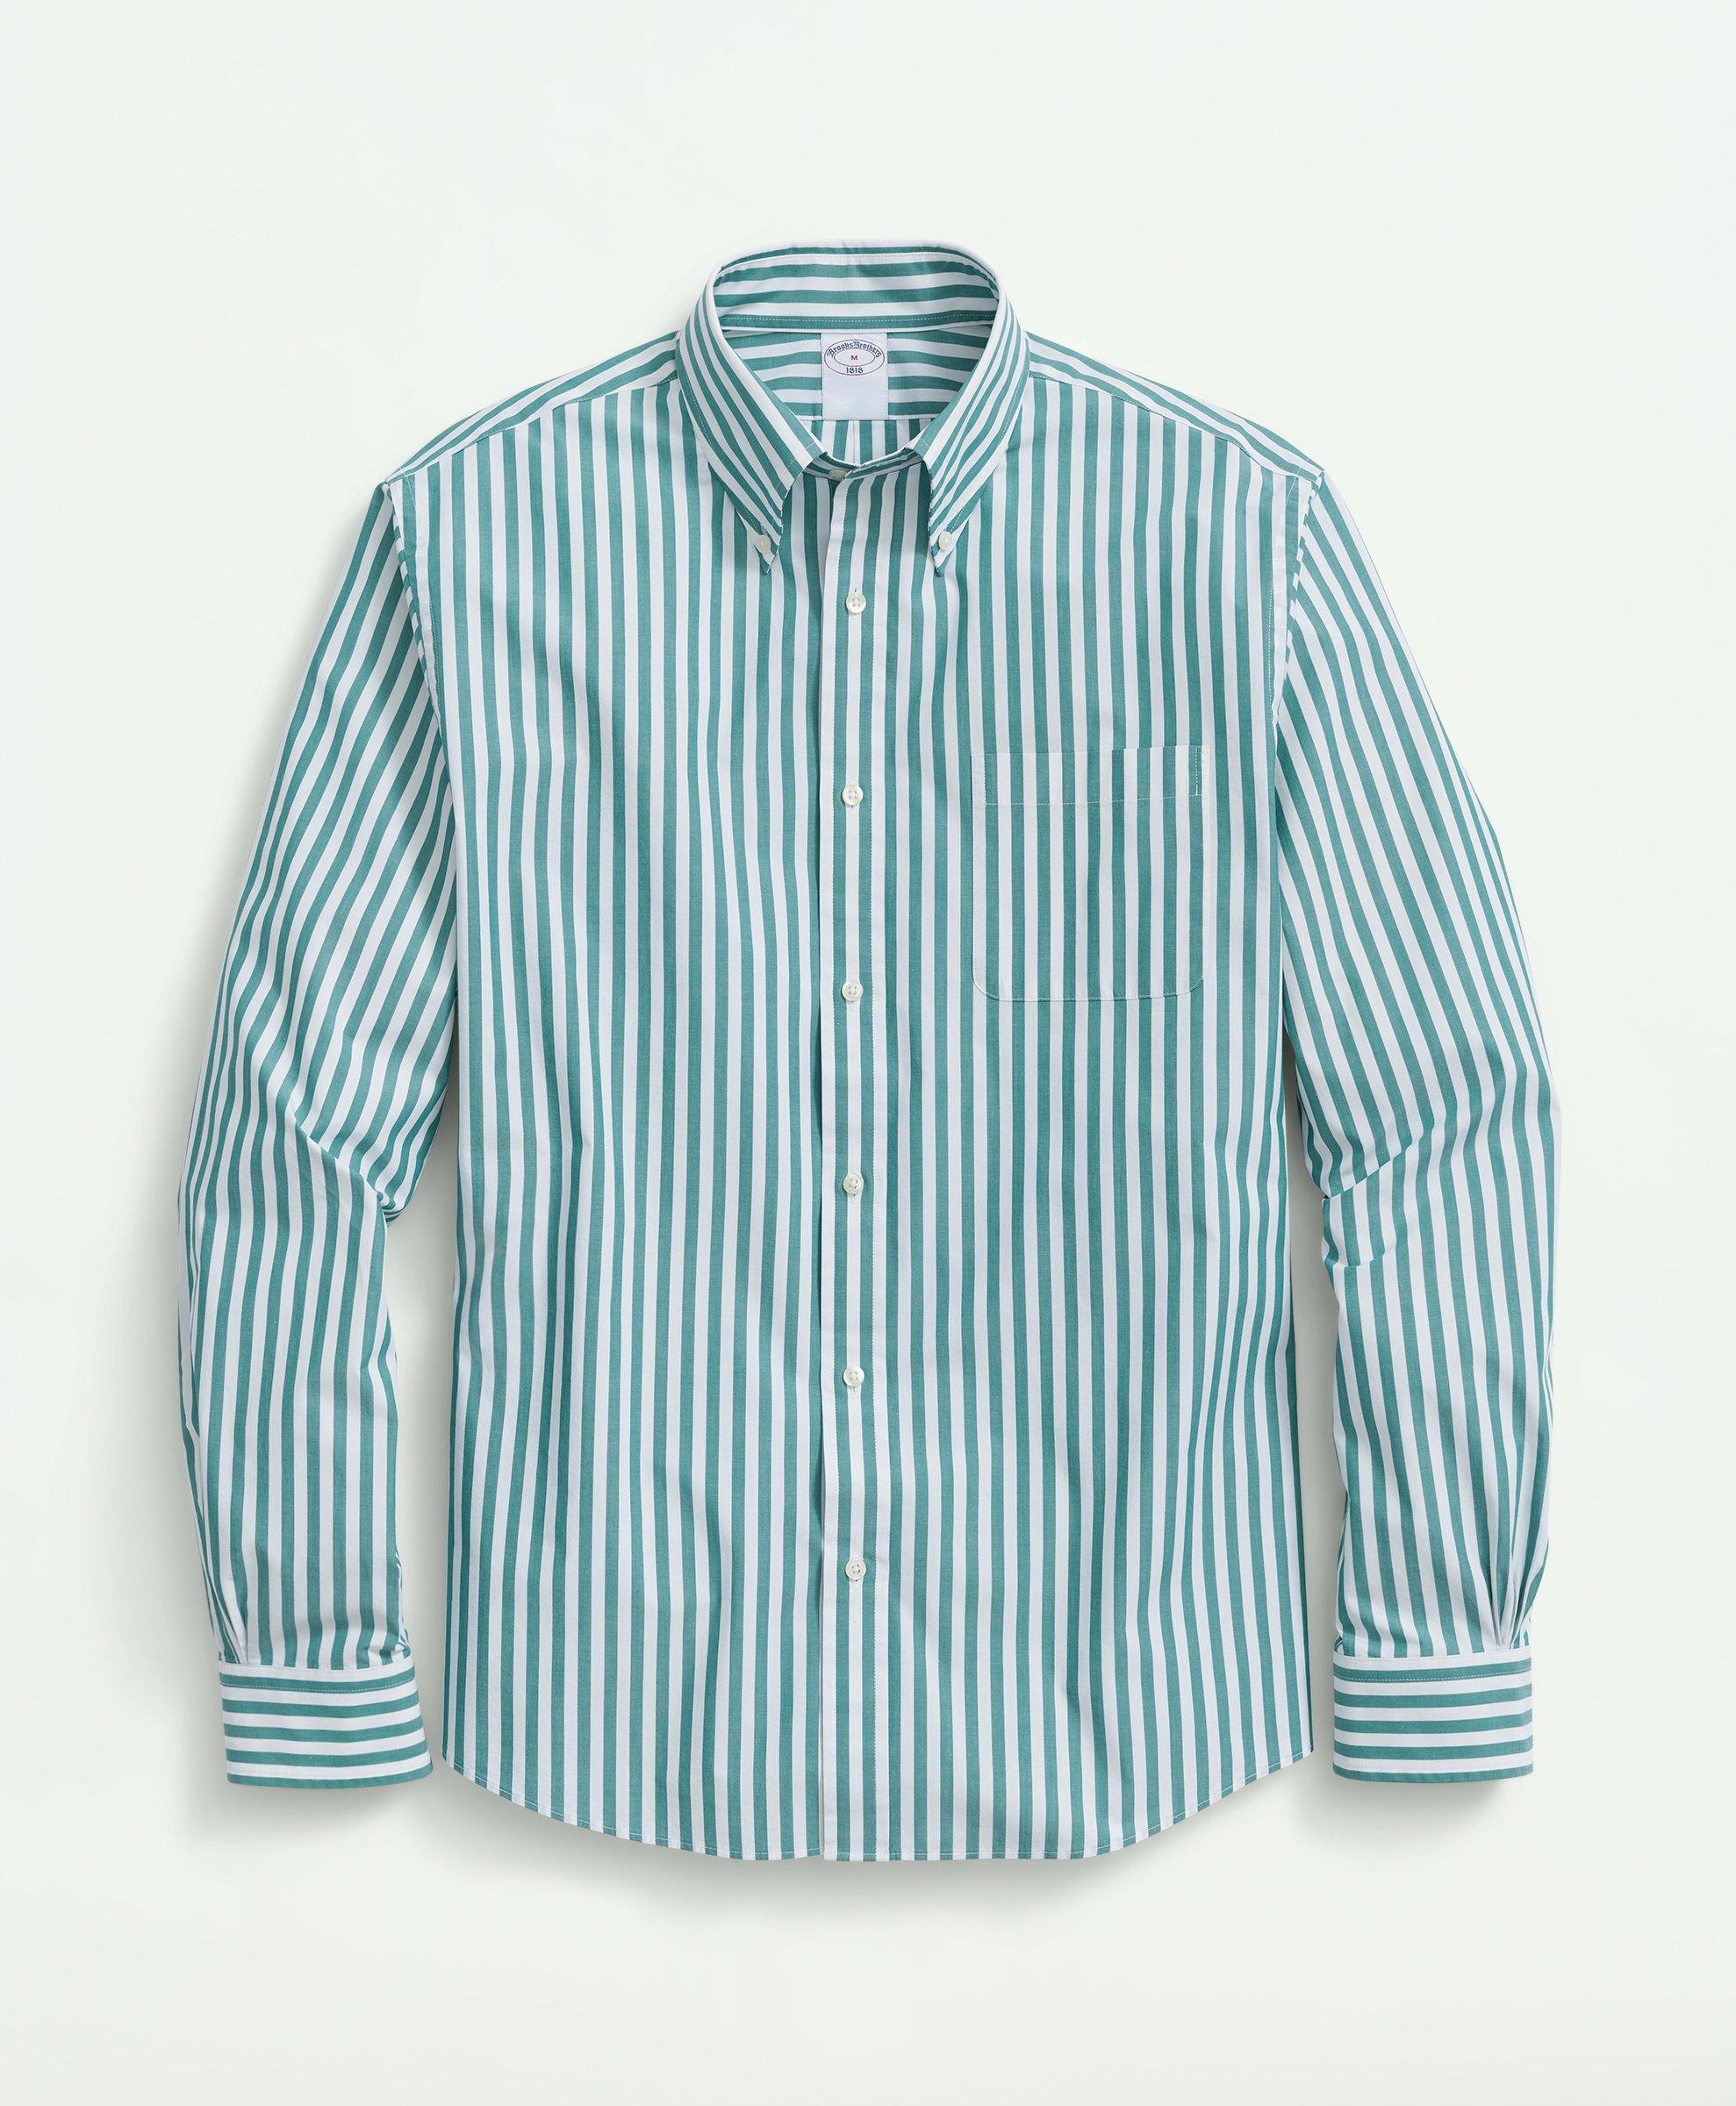 Brooks Brothers Big & Tall Friday Shirt, Poplin Butcher Striped | Green | Size 4x Tall